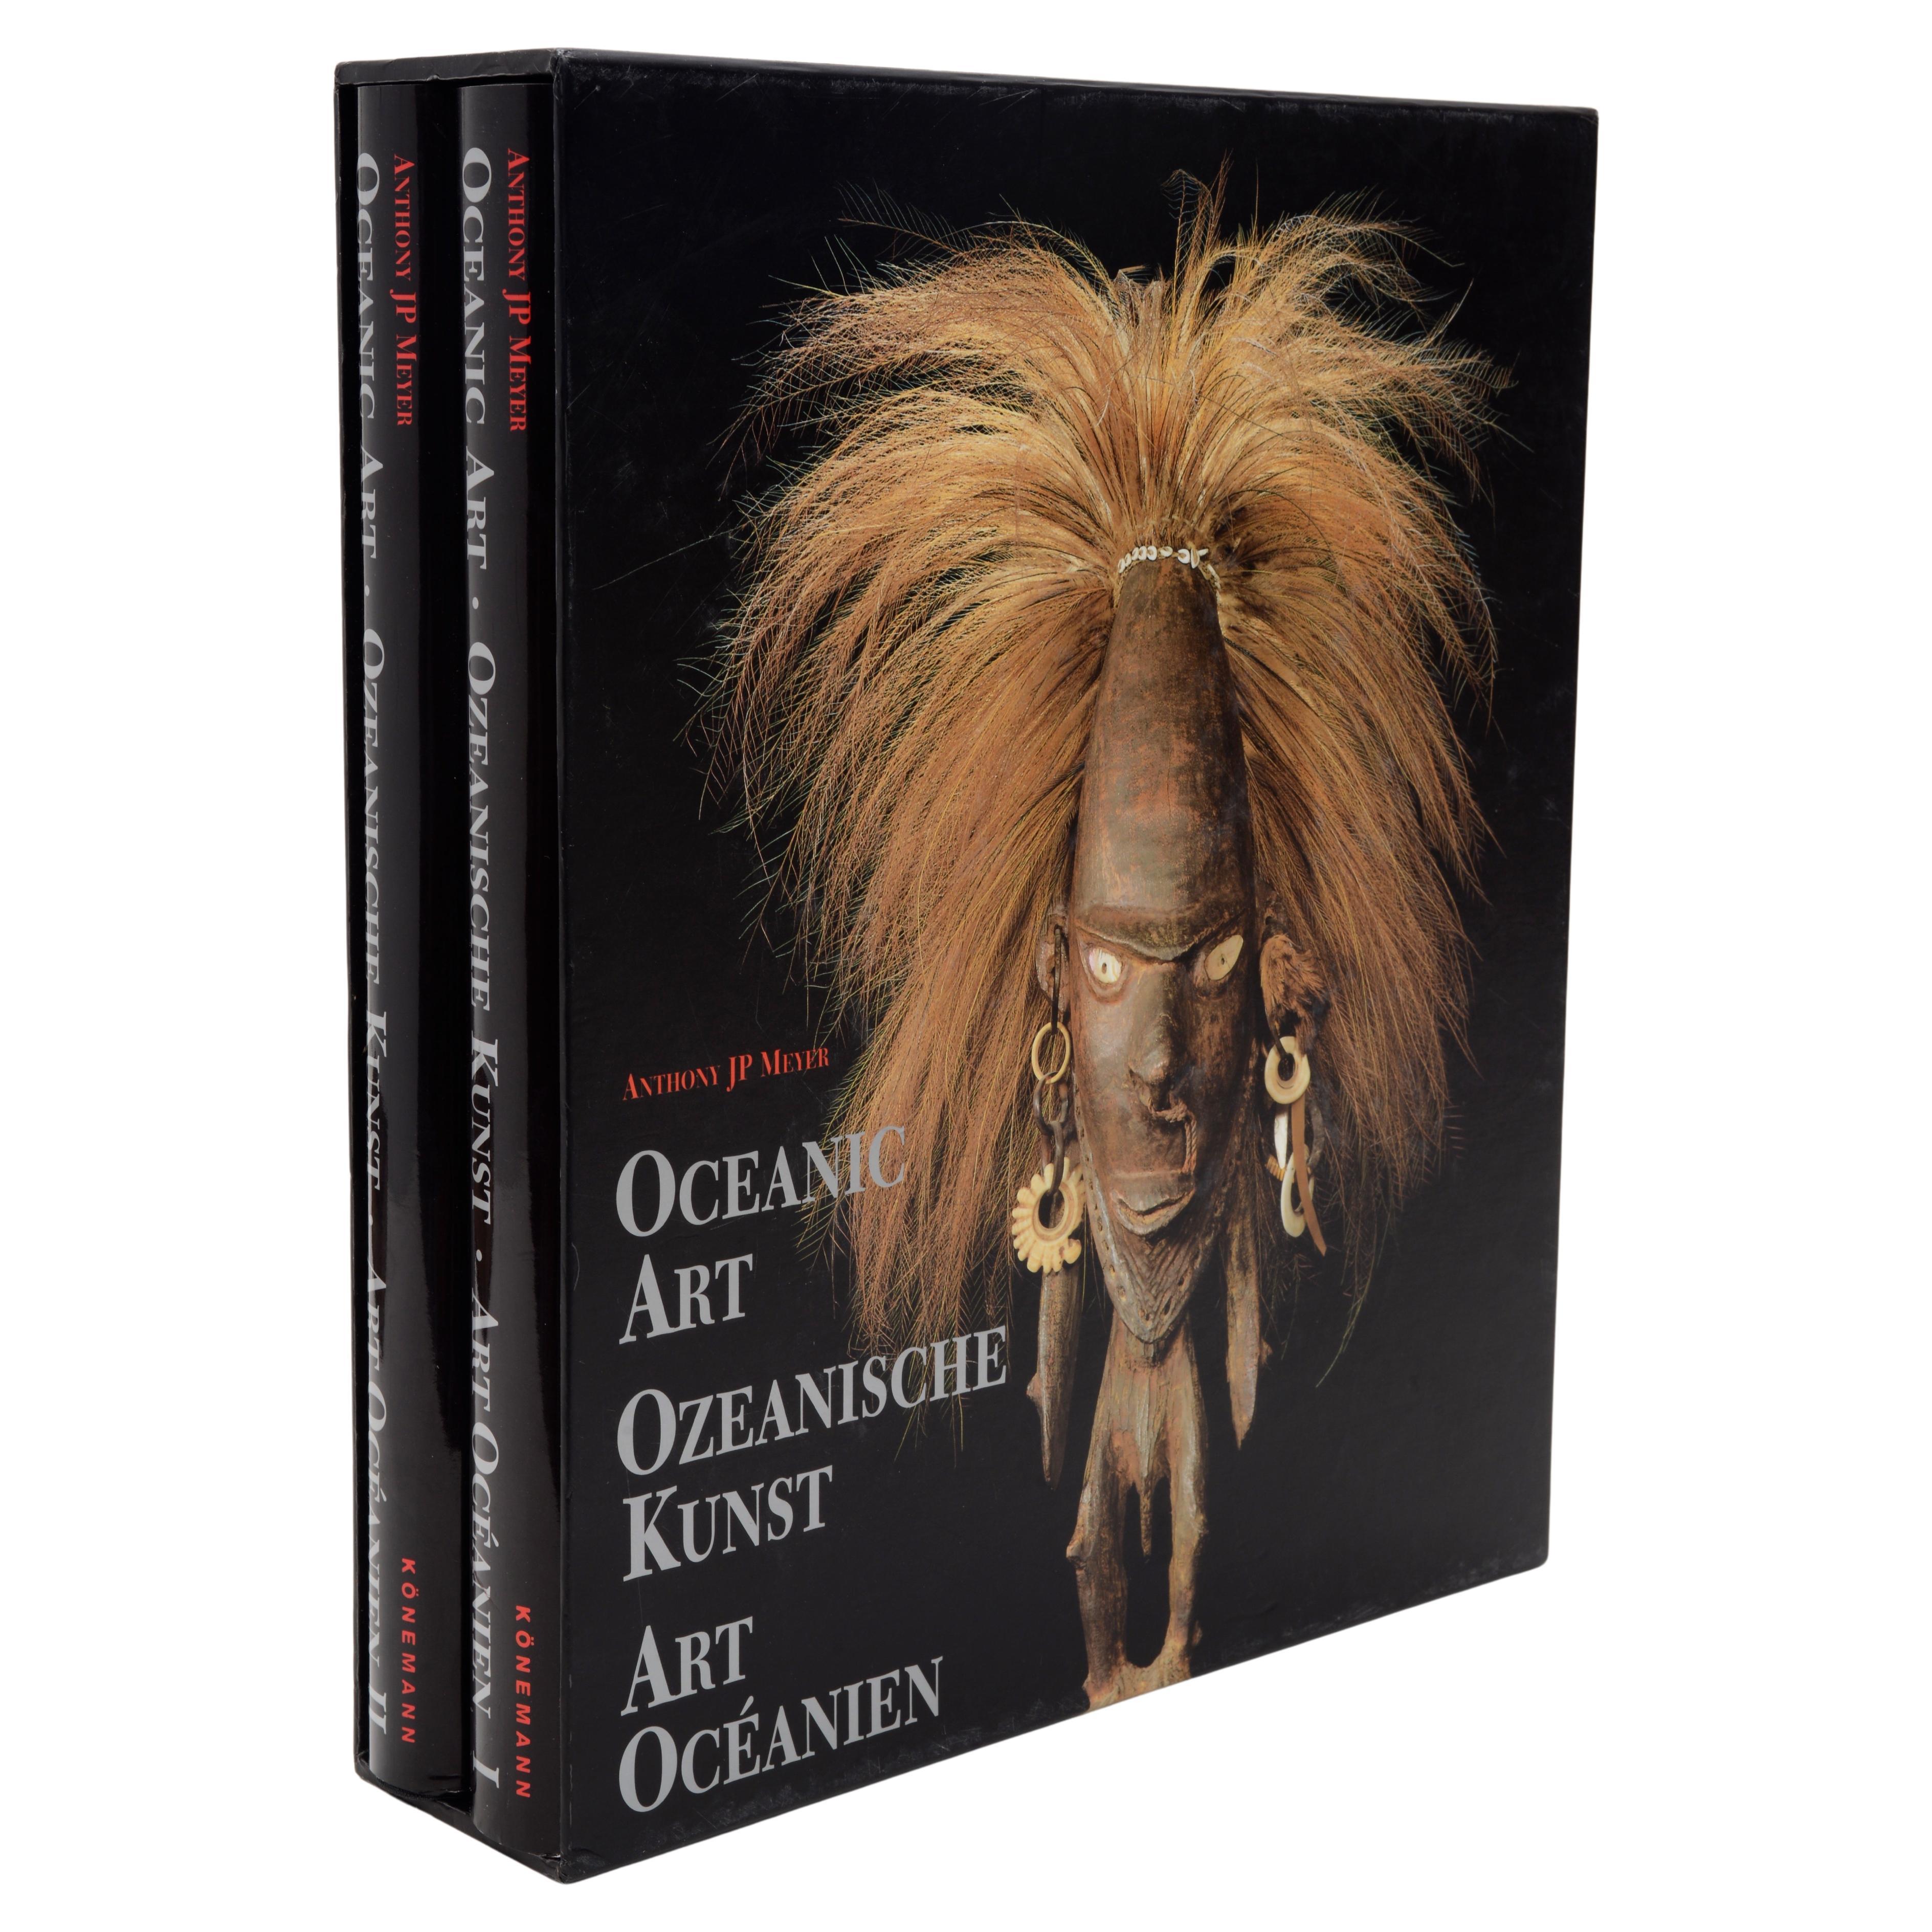 Oceanic Art, 2 Vol Set d'Anthony J.P. Meyer, 1st Ed en anglais, français et allemand